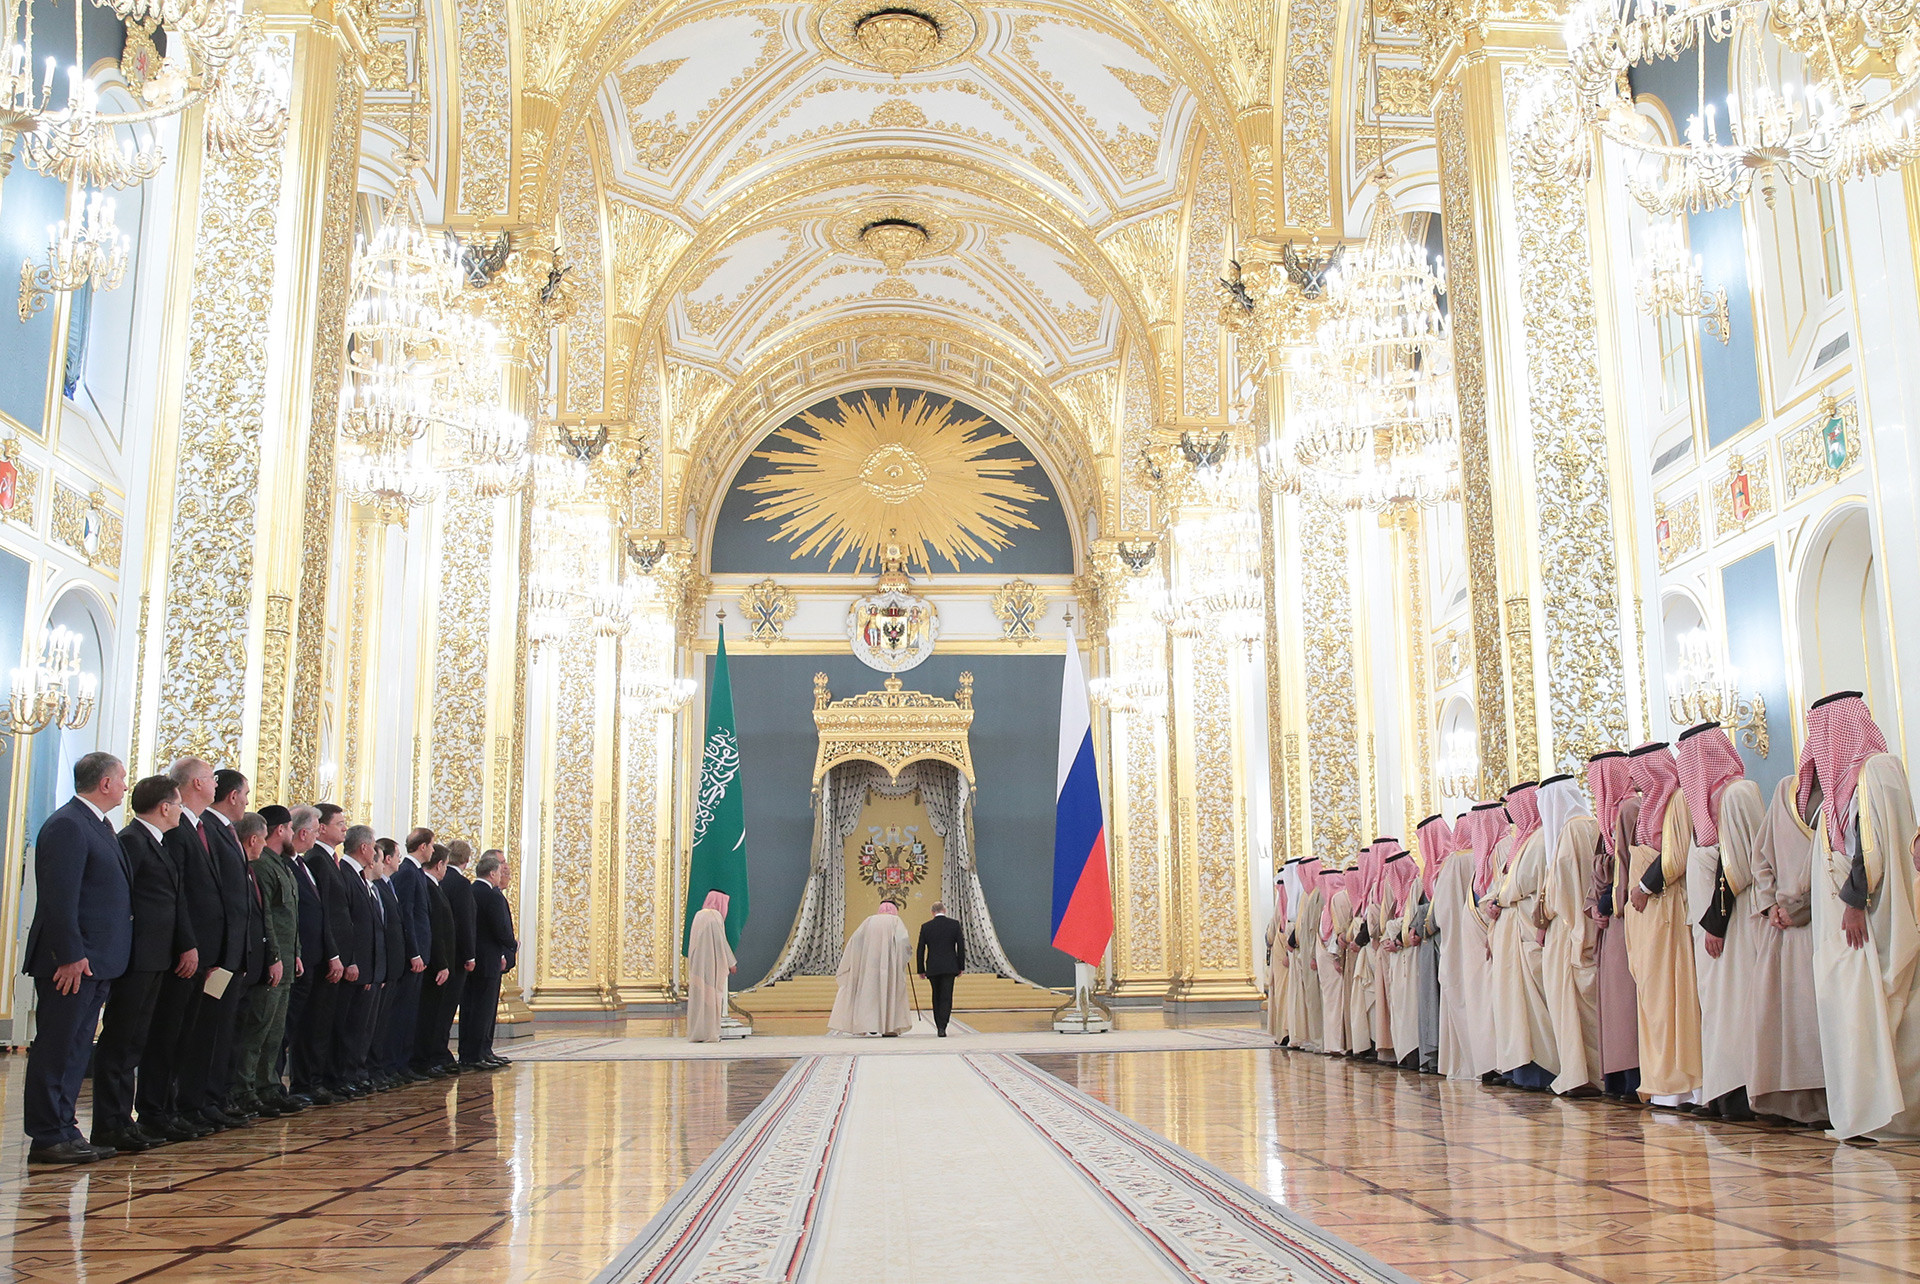 El rey Salman bin Abdulaziz Al Saud (izq.) de Saudi Arabia y el presidente ruso Vladímir Putin en el Kremlin.